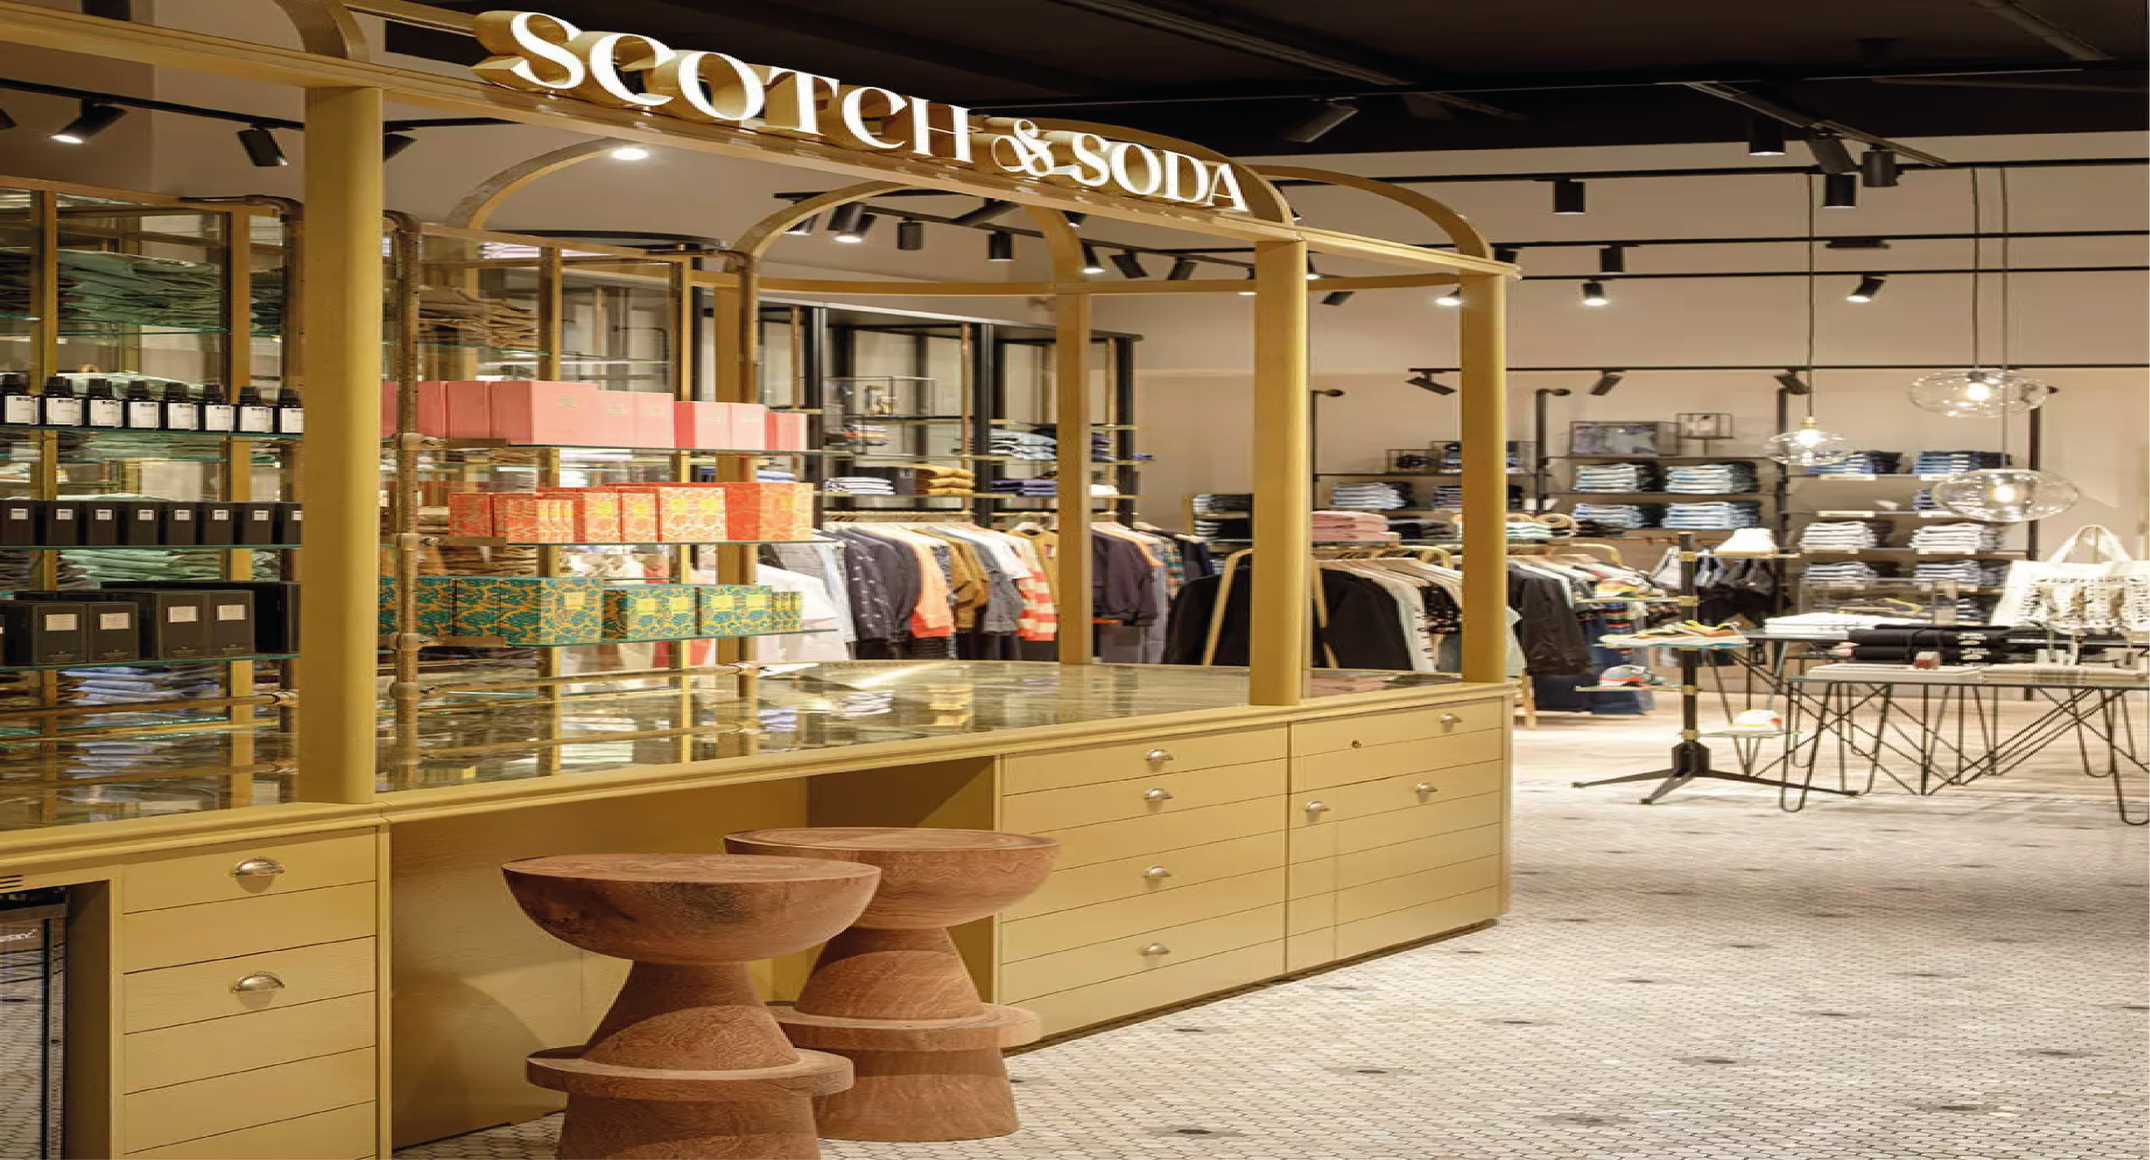 Scotch & Soda en Bos Group International kondigen nieuwe schoenenlicenties aan in partnerschap